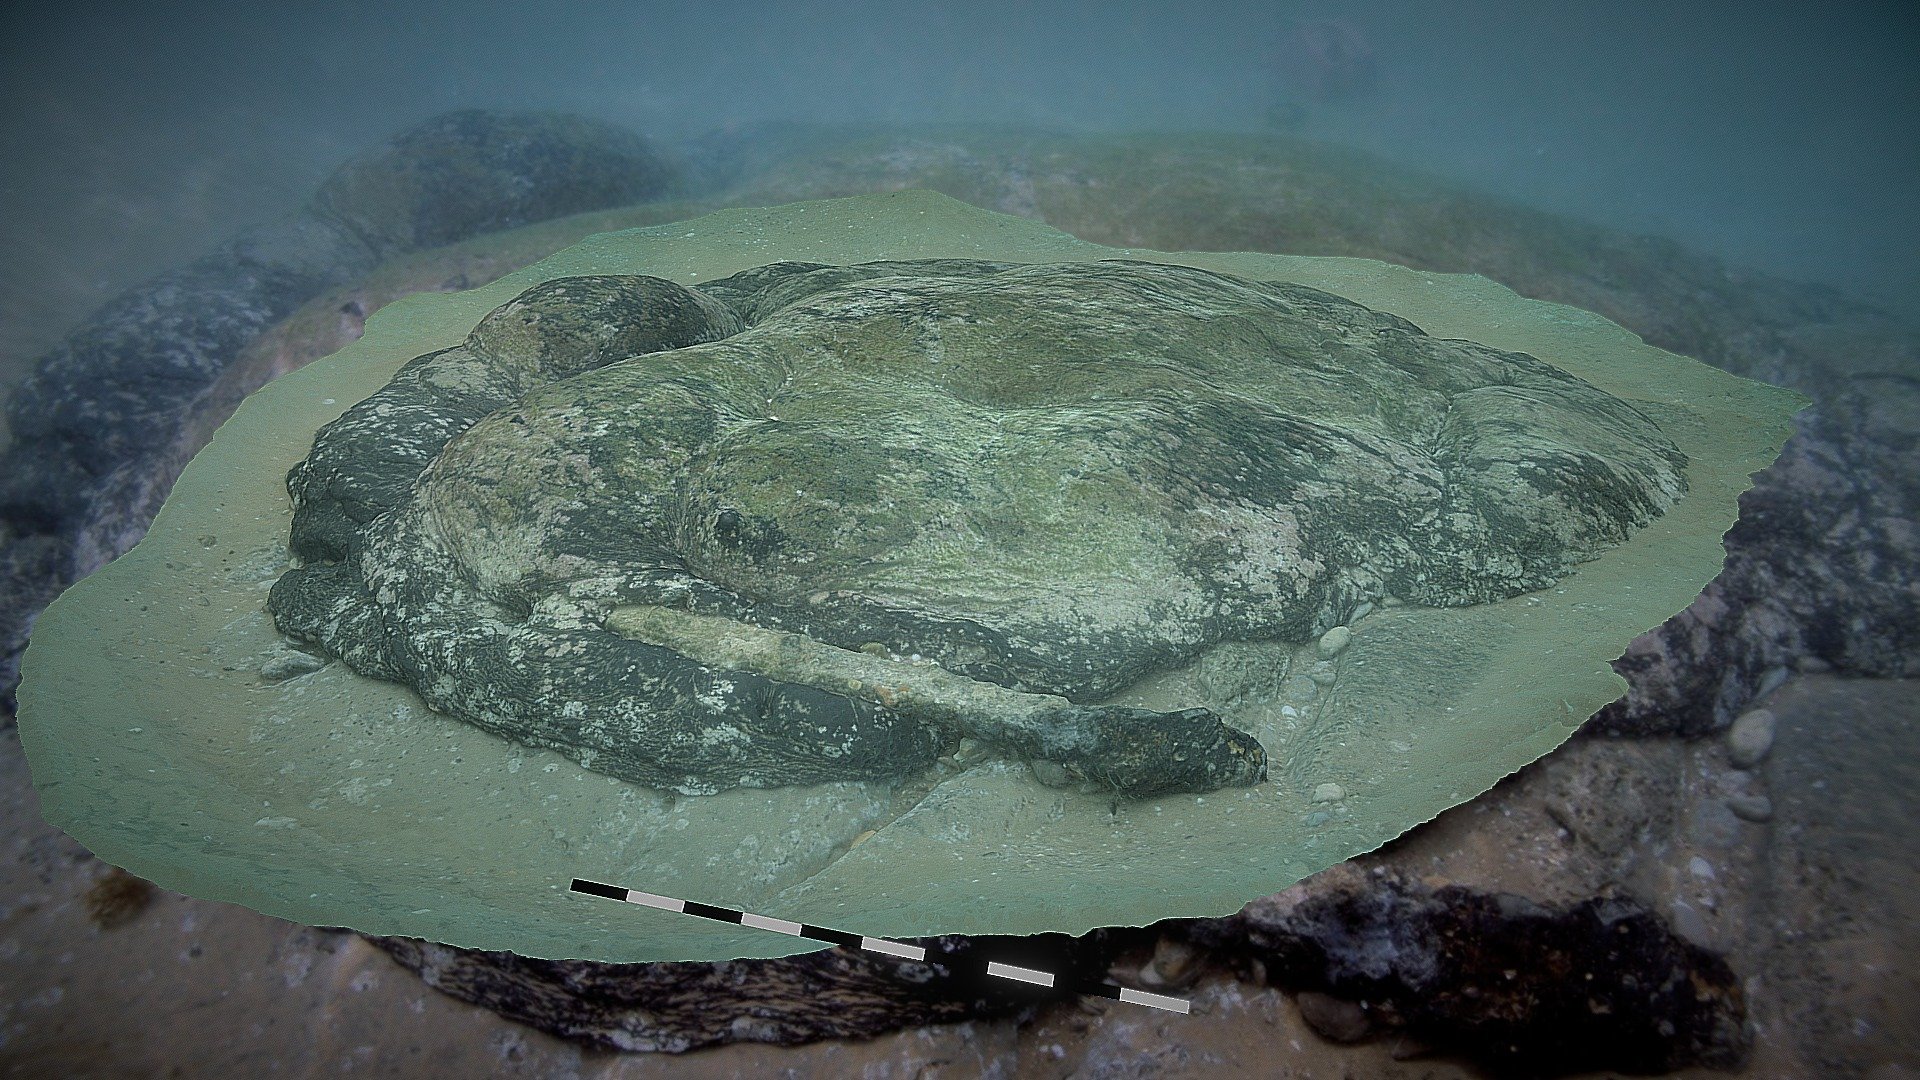 Underwater: Pedra Negra - Marsay